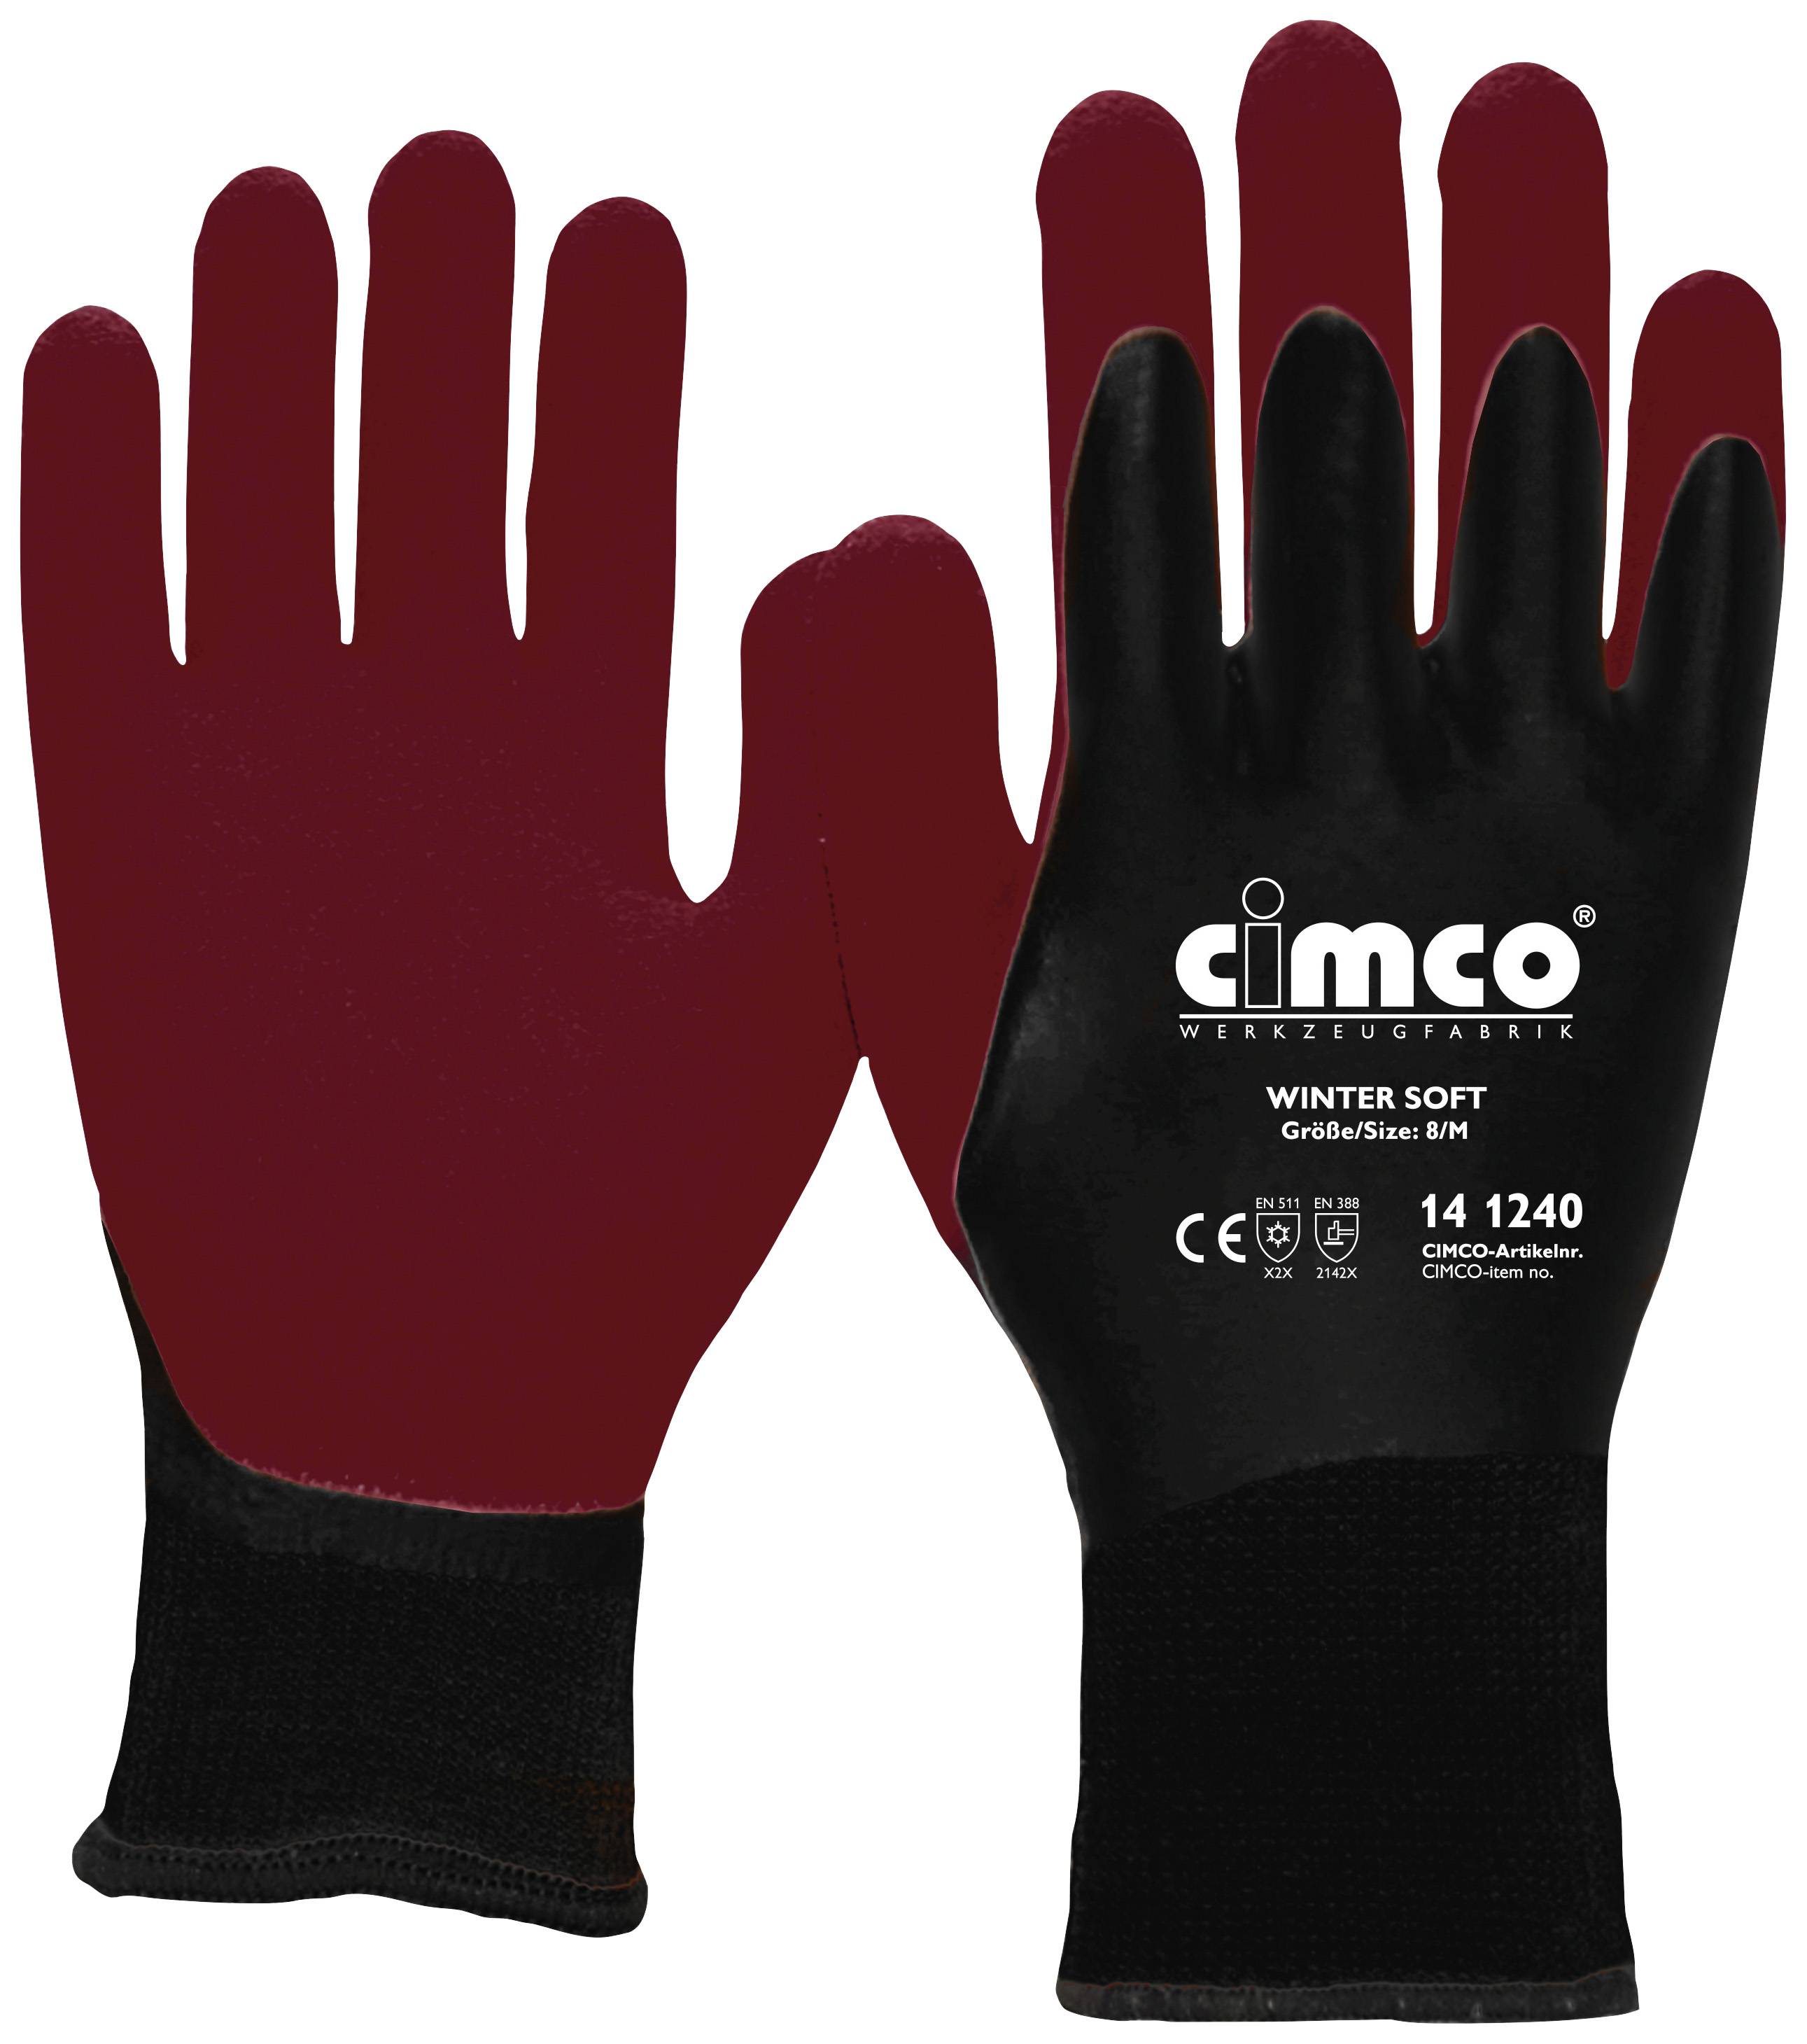 Cimco Winter Soft dunkelrot/schwarz 141242 Vinyl Arbeitshandschuh Größe (Handschuhe): 10, XL EN 388